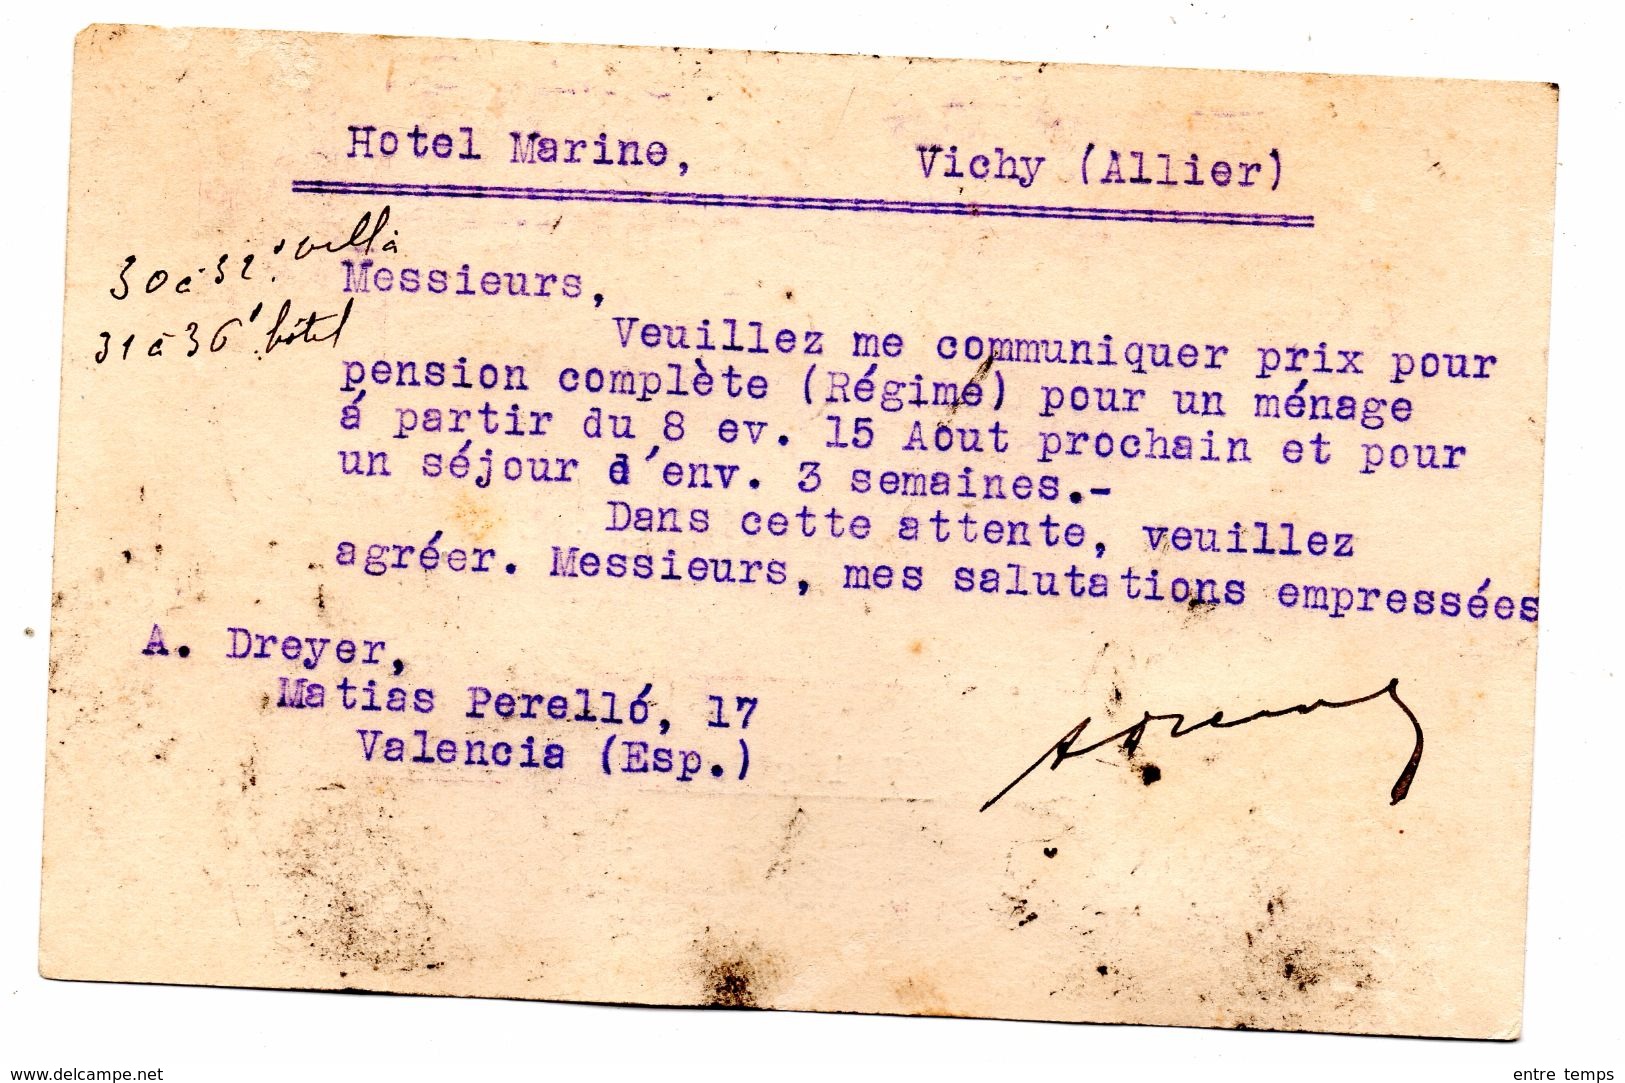 Entier Postal Espagne Surcharge Republica Espanola Valence Pour Vichy 03 - Lettres & Documents